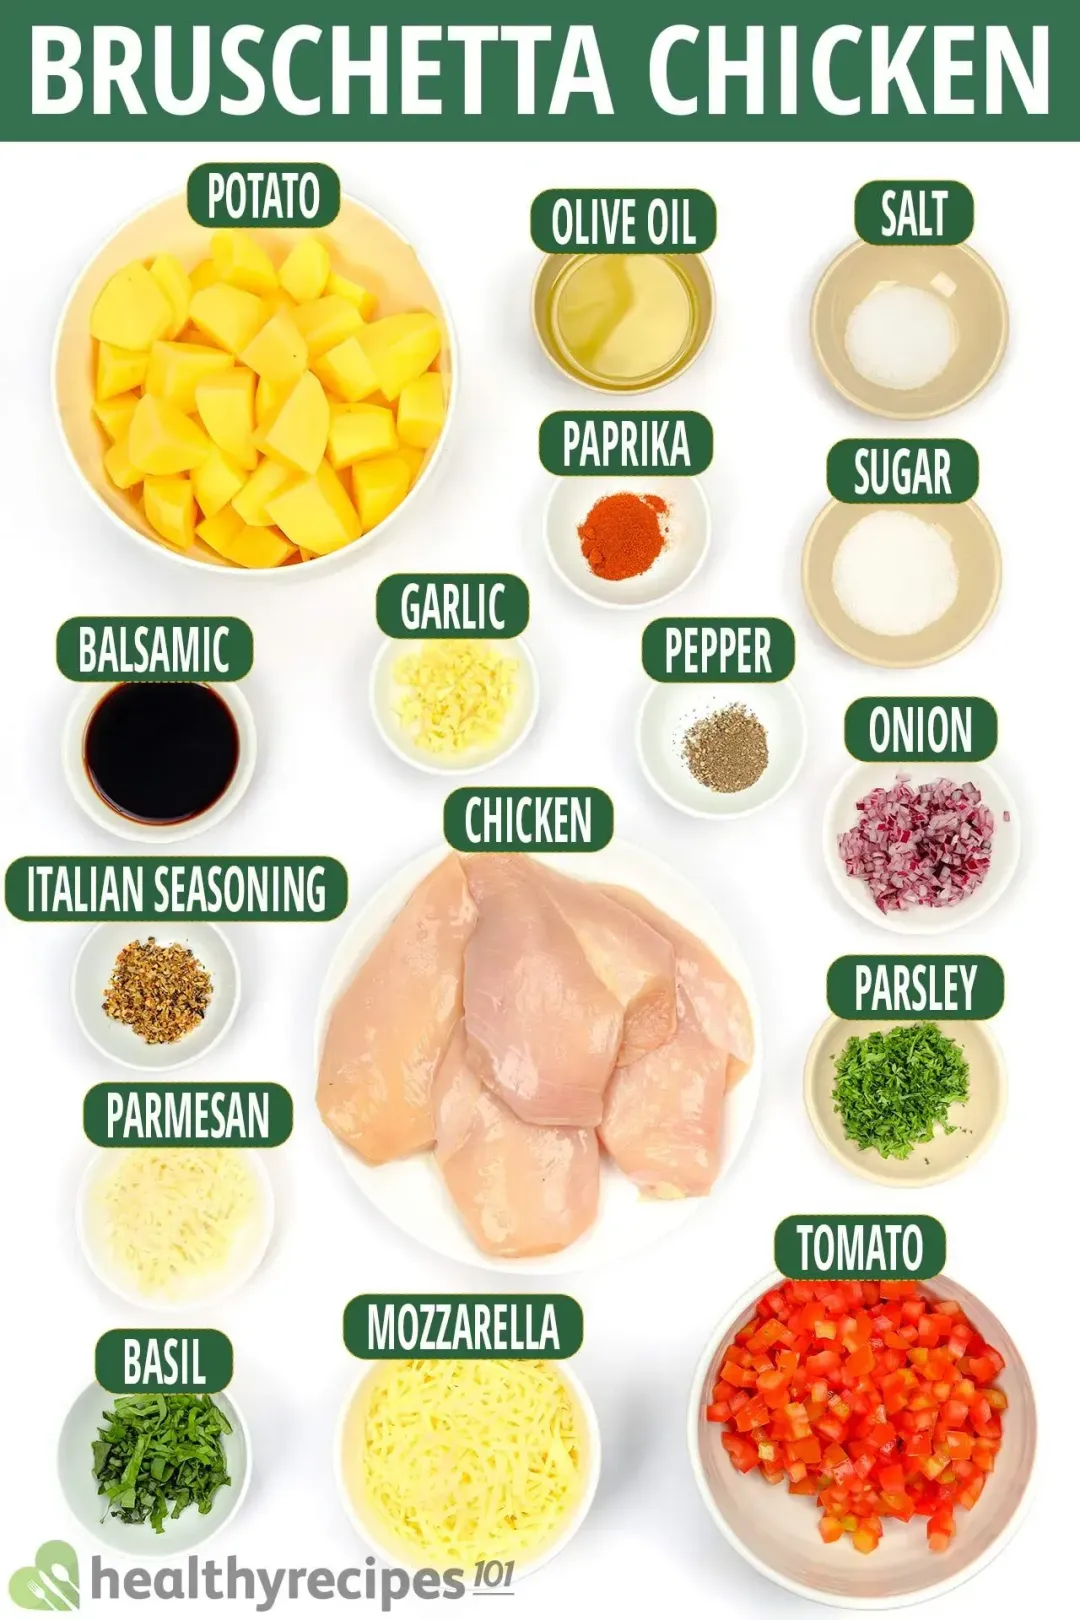 Ingredients for Bruschetta Chicken